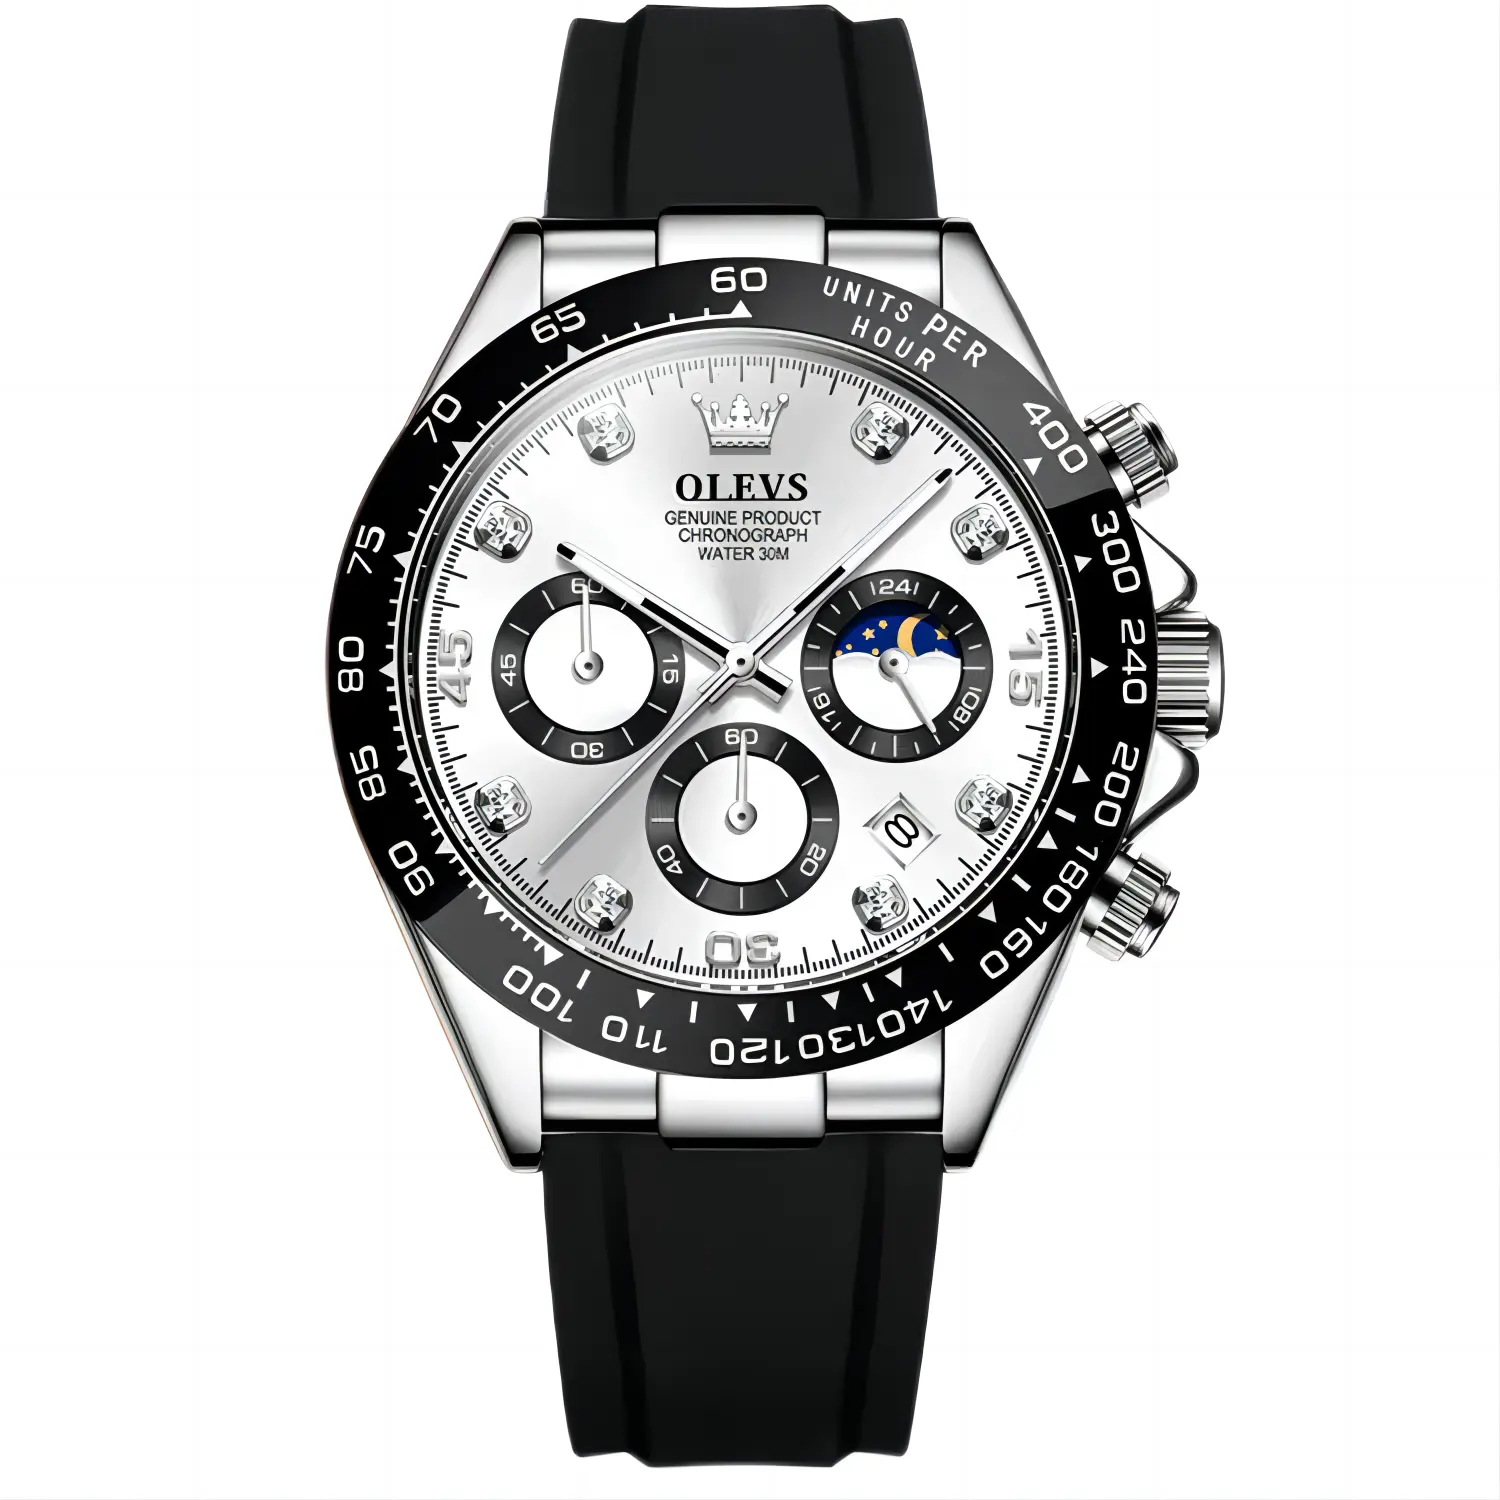 Hot Selling Fashion Wasserdichte Sport Auto Date Armbanduhren Relogio Hombre Luxus Hochwertige Quarzuhr für Männer